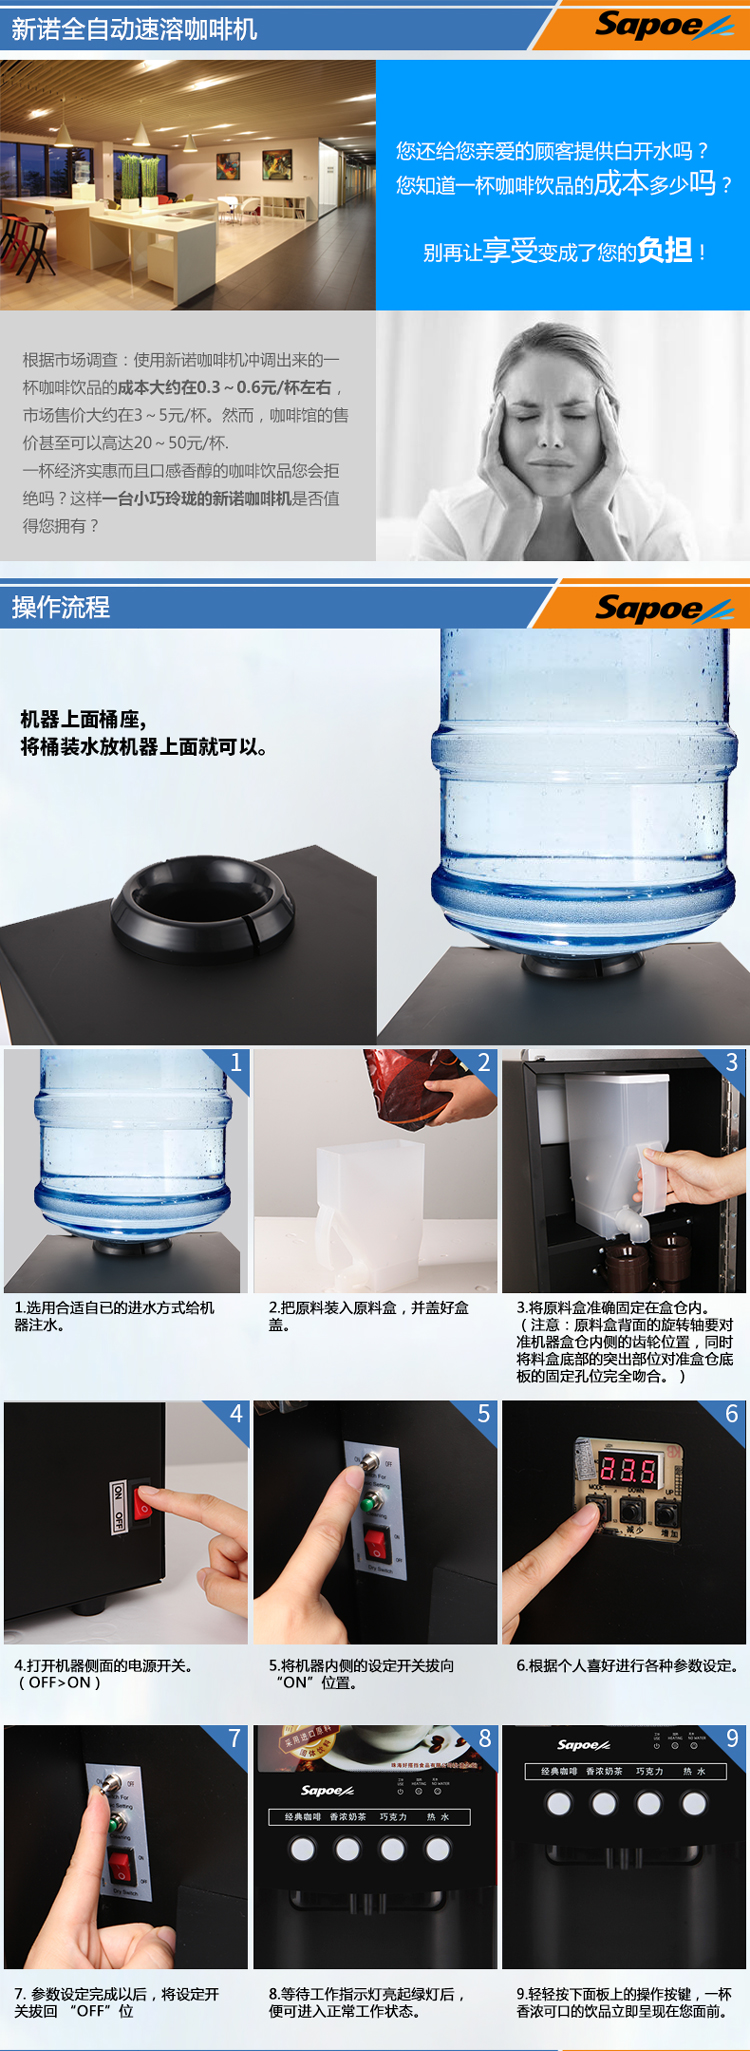 新诺流线型设计灯箱广告热饮茶饮自动冲调机SC-7903FWLP